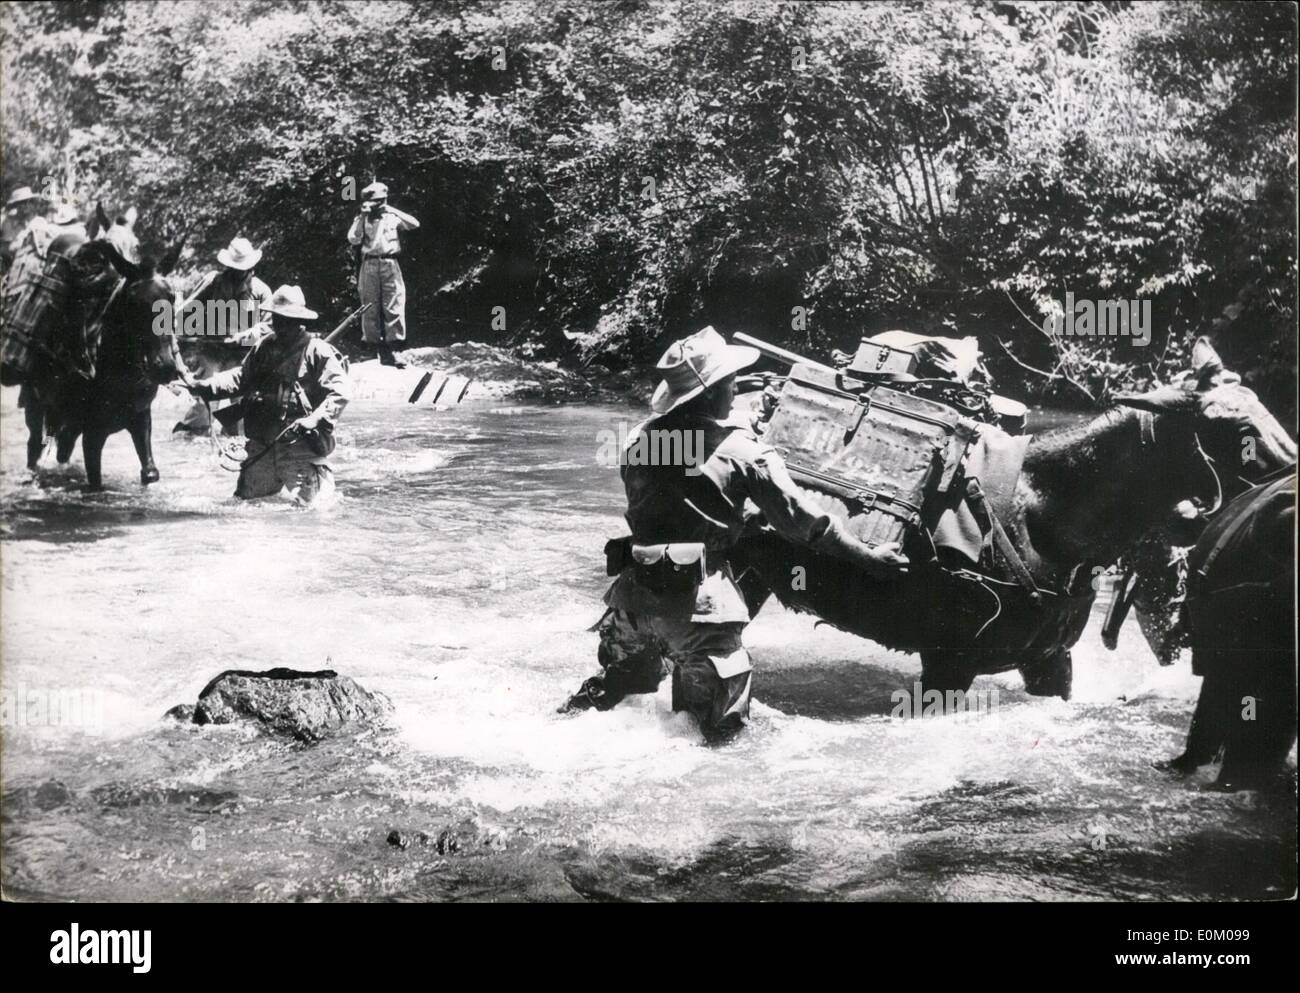 01 janvier 1953 - Guerre En Indo Chine : un Vietnam Mule Corps traversant une rivière dans la région où de violents combats Ankeh a été rapporté récemment. Banque D'Images